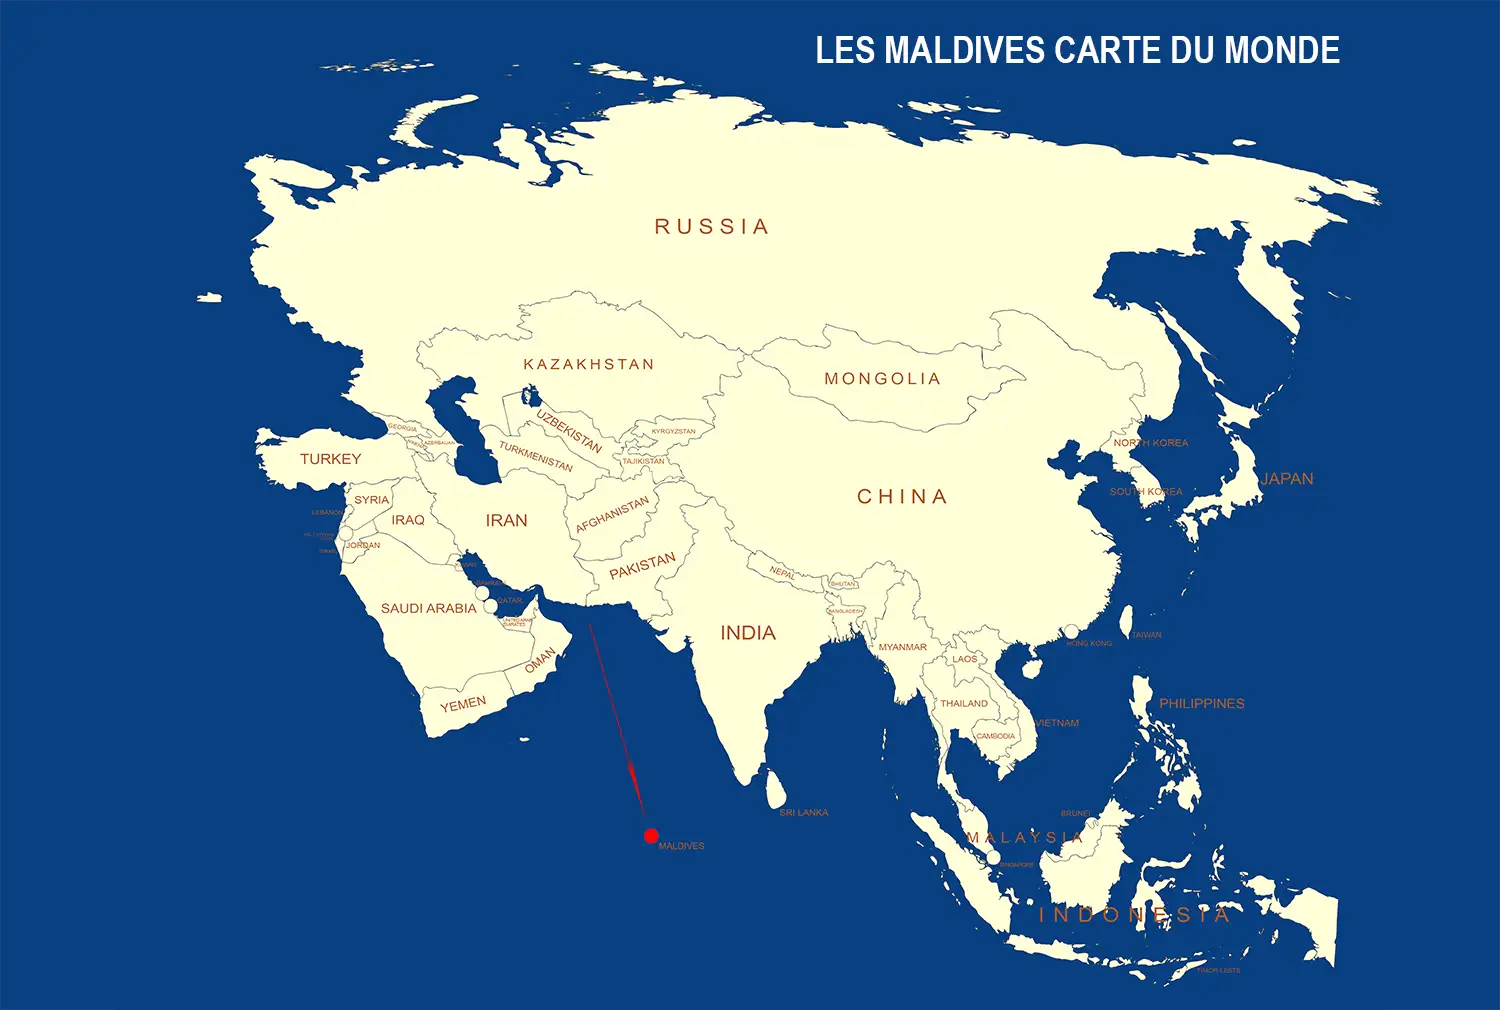 Iles Maldives sur la carte du monde